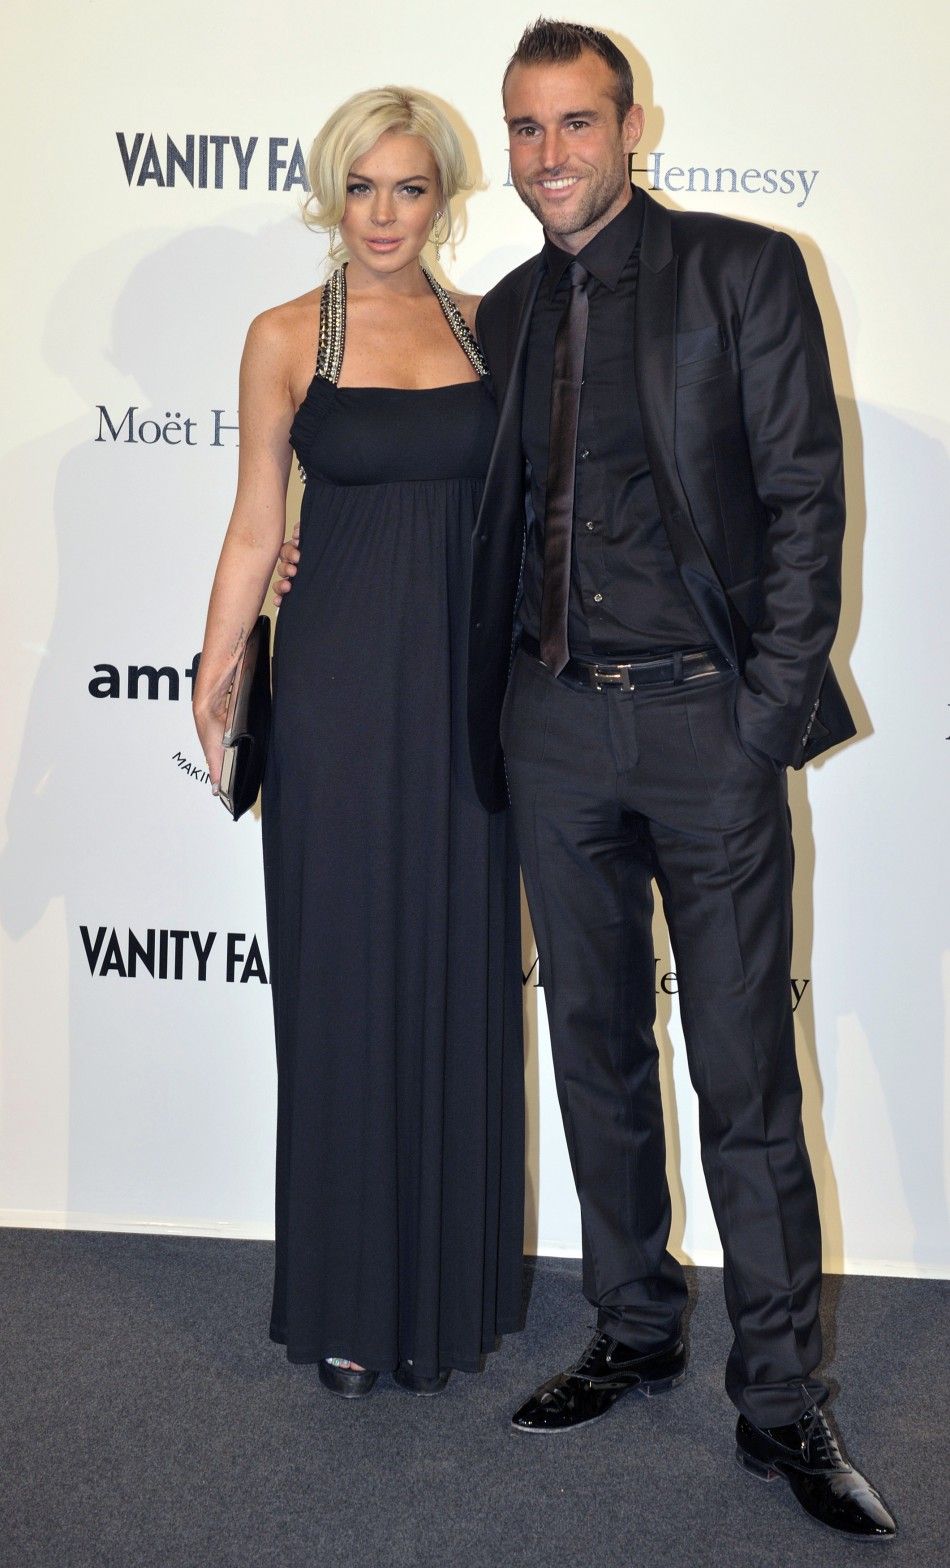 Actress Lindsay Lohan and designer Philippe Plein arrive at the amfARs Milan Fashion Week Gala in Milan